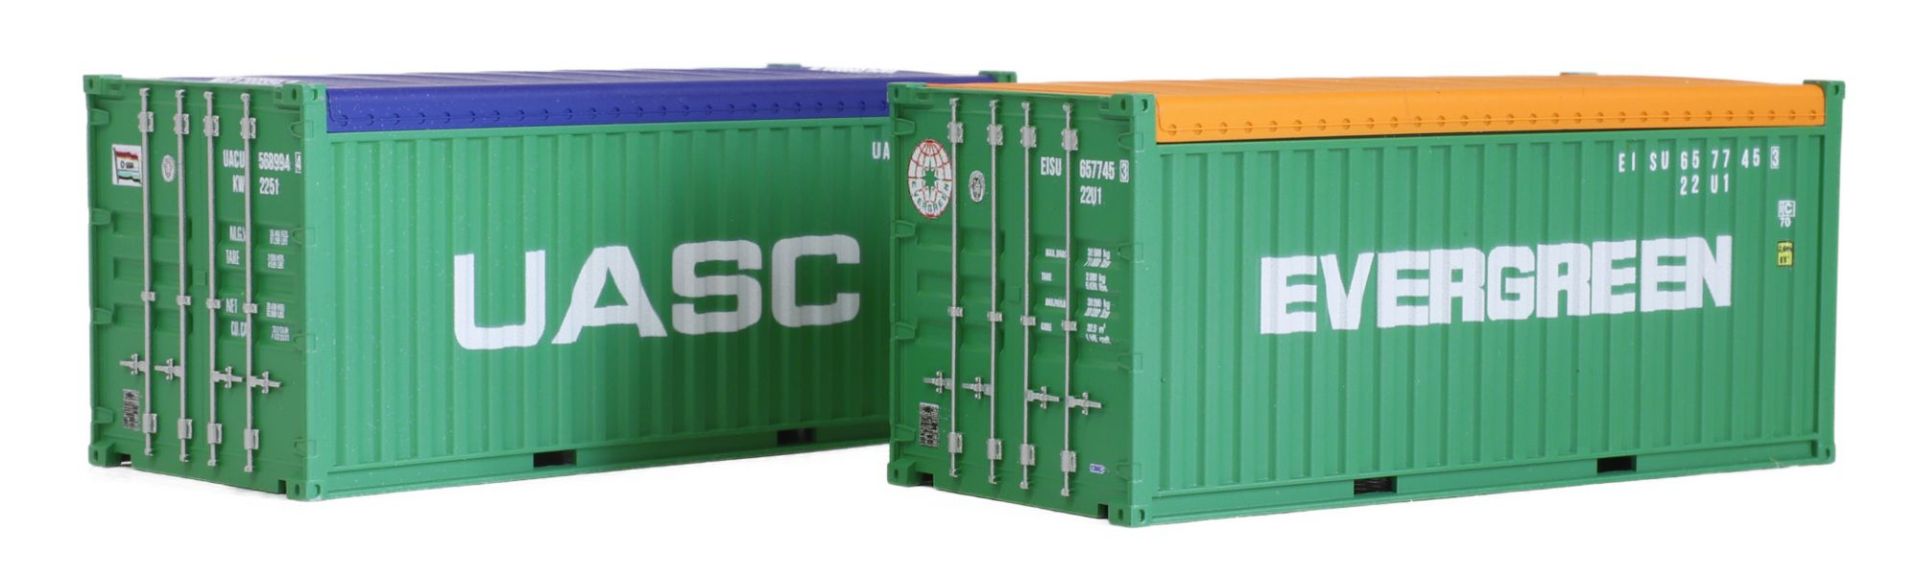 igra 98010059 - 2er Set Container, Evergreen und UASC